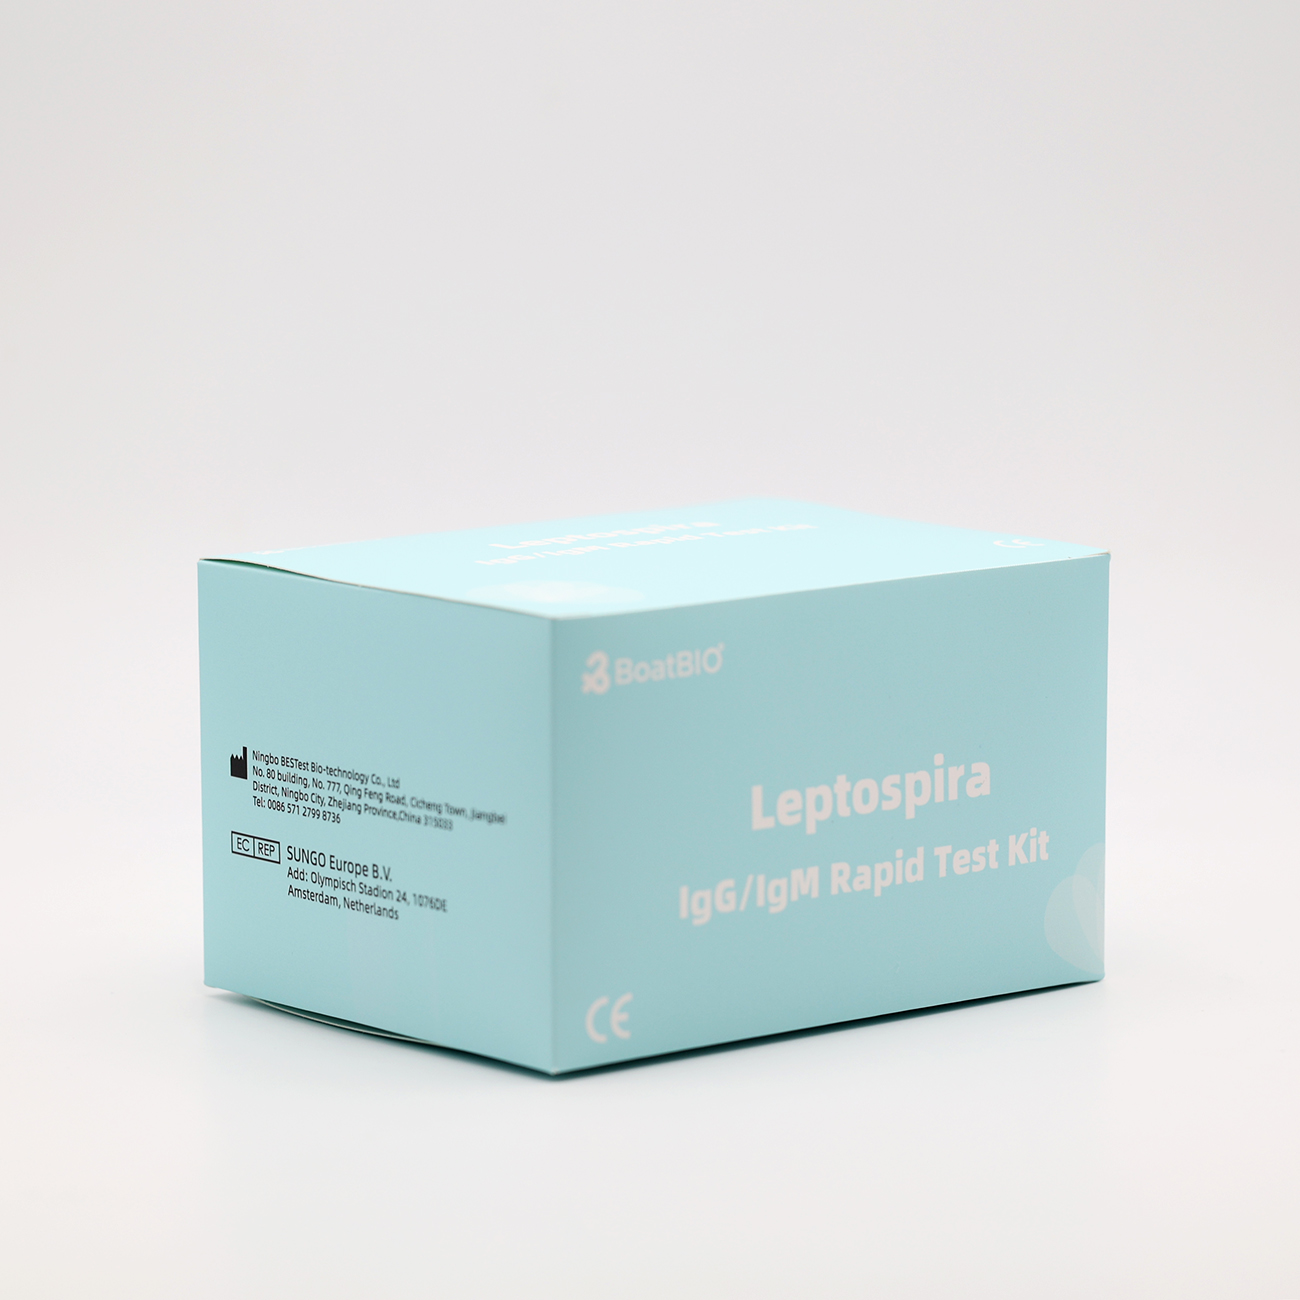 Leptospira IgG/IgM Test Kit